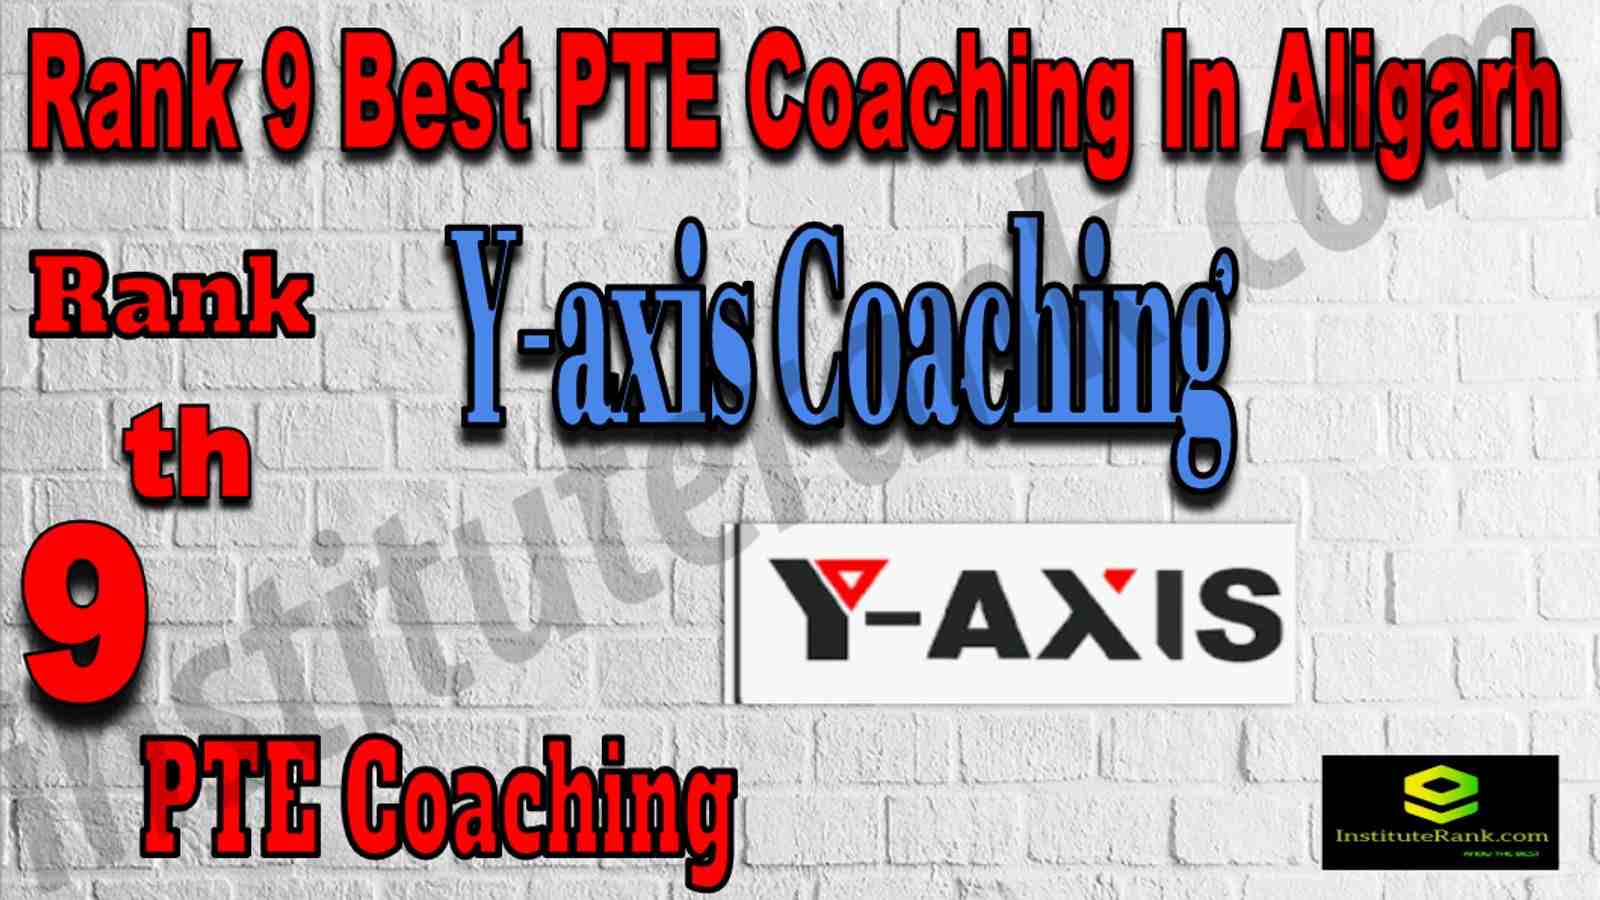 Rank 9 Best PTE Coaching In Aligarh